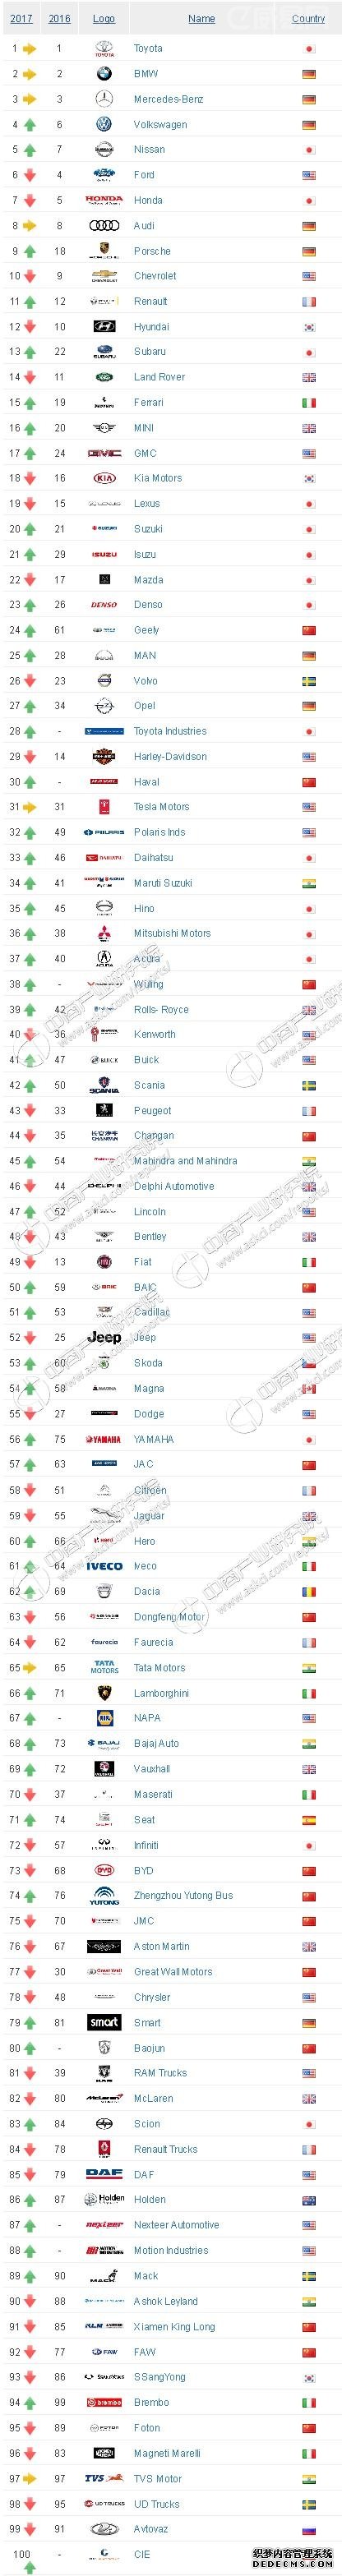 2017年中国汽车品牌价值15强排行榜